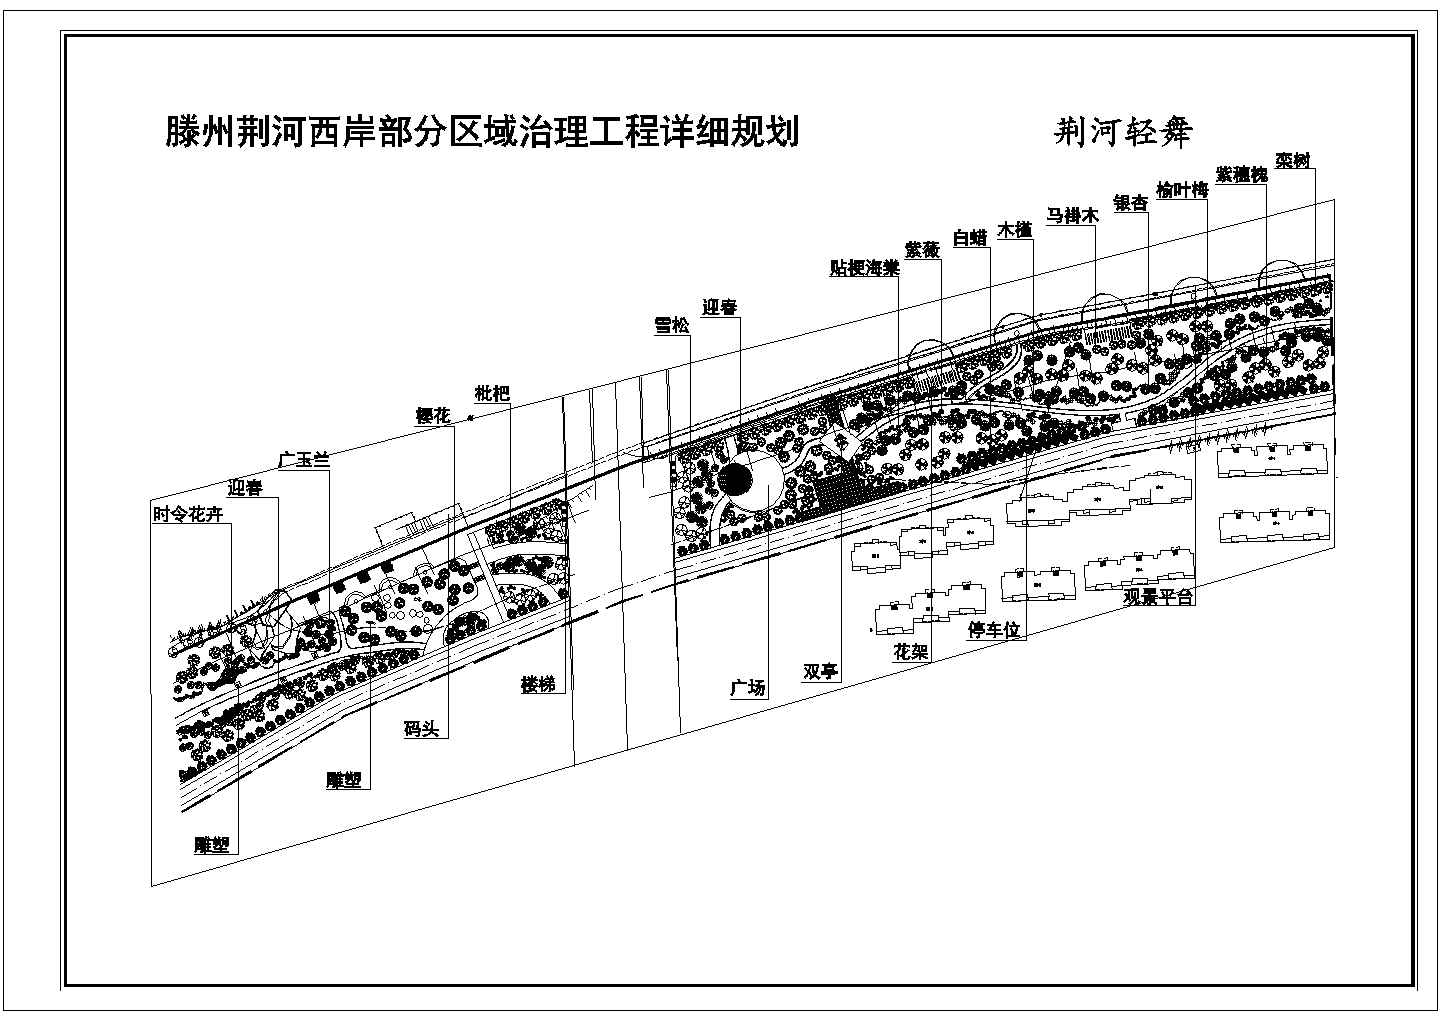 腾州市荆河两岸部分区域植物配置方案图